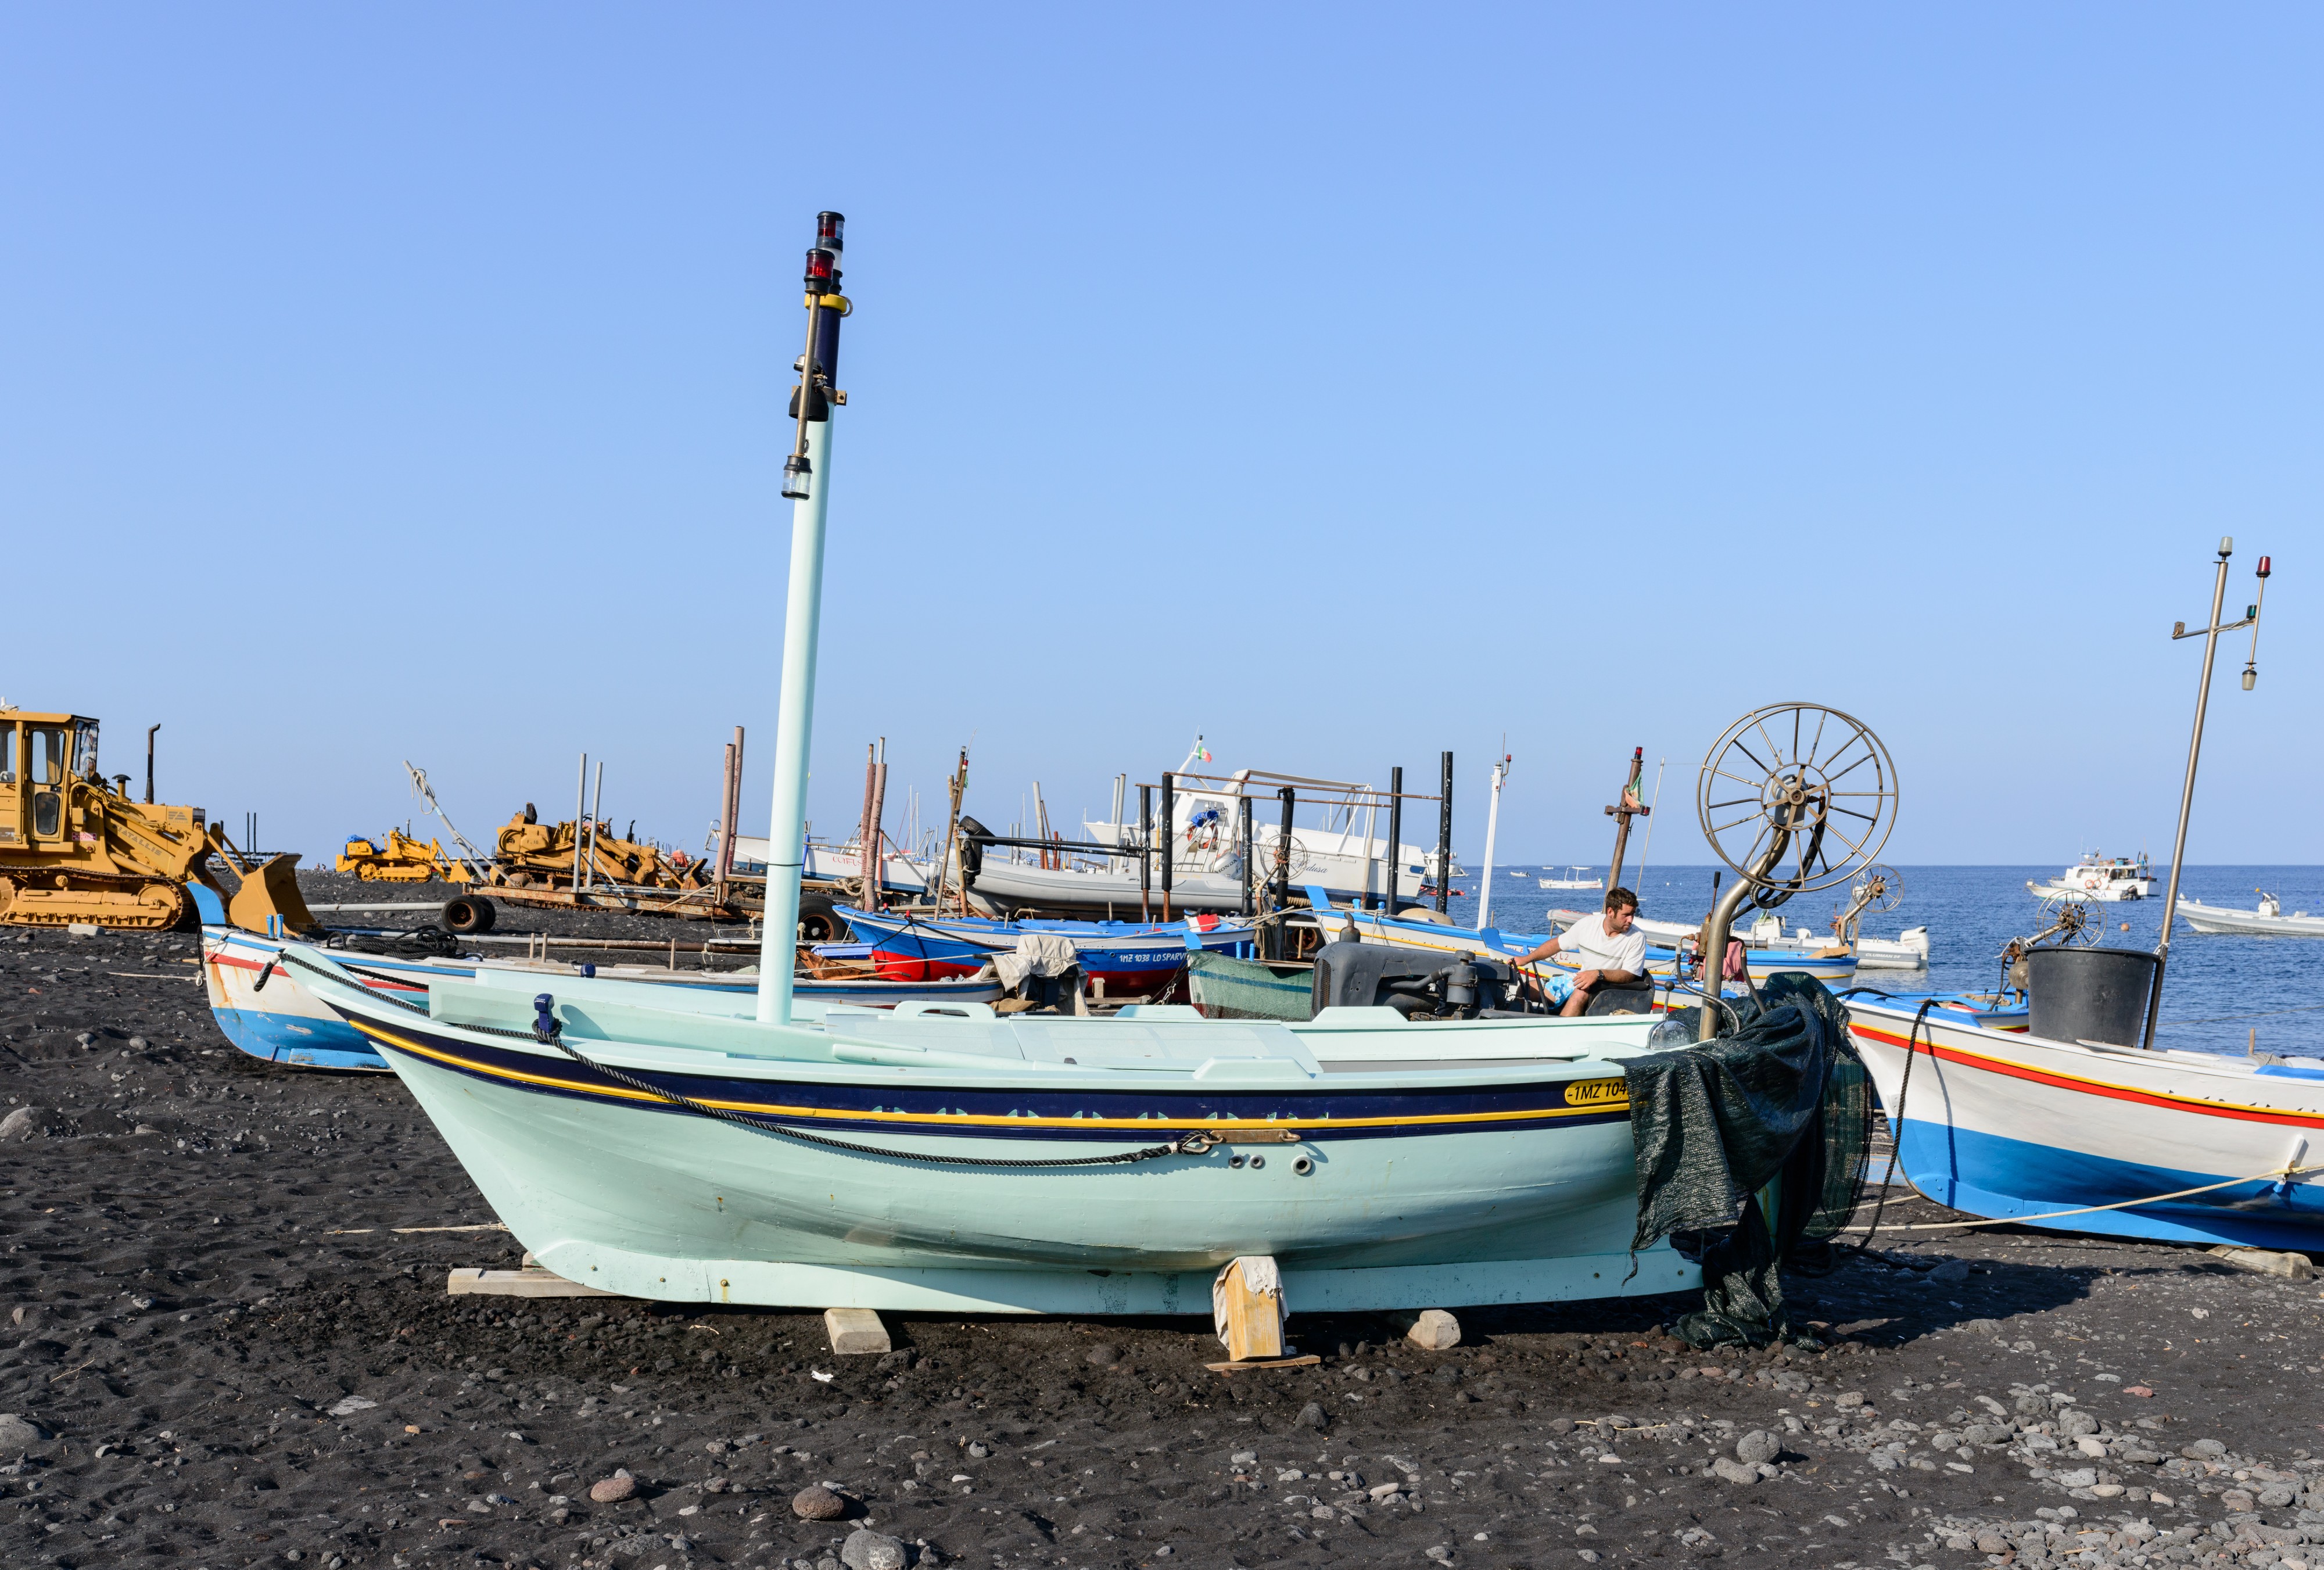 Island Stromboli - Italy - July 18th 2013 - 12